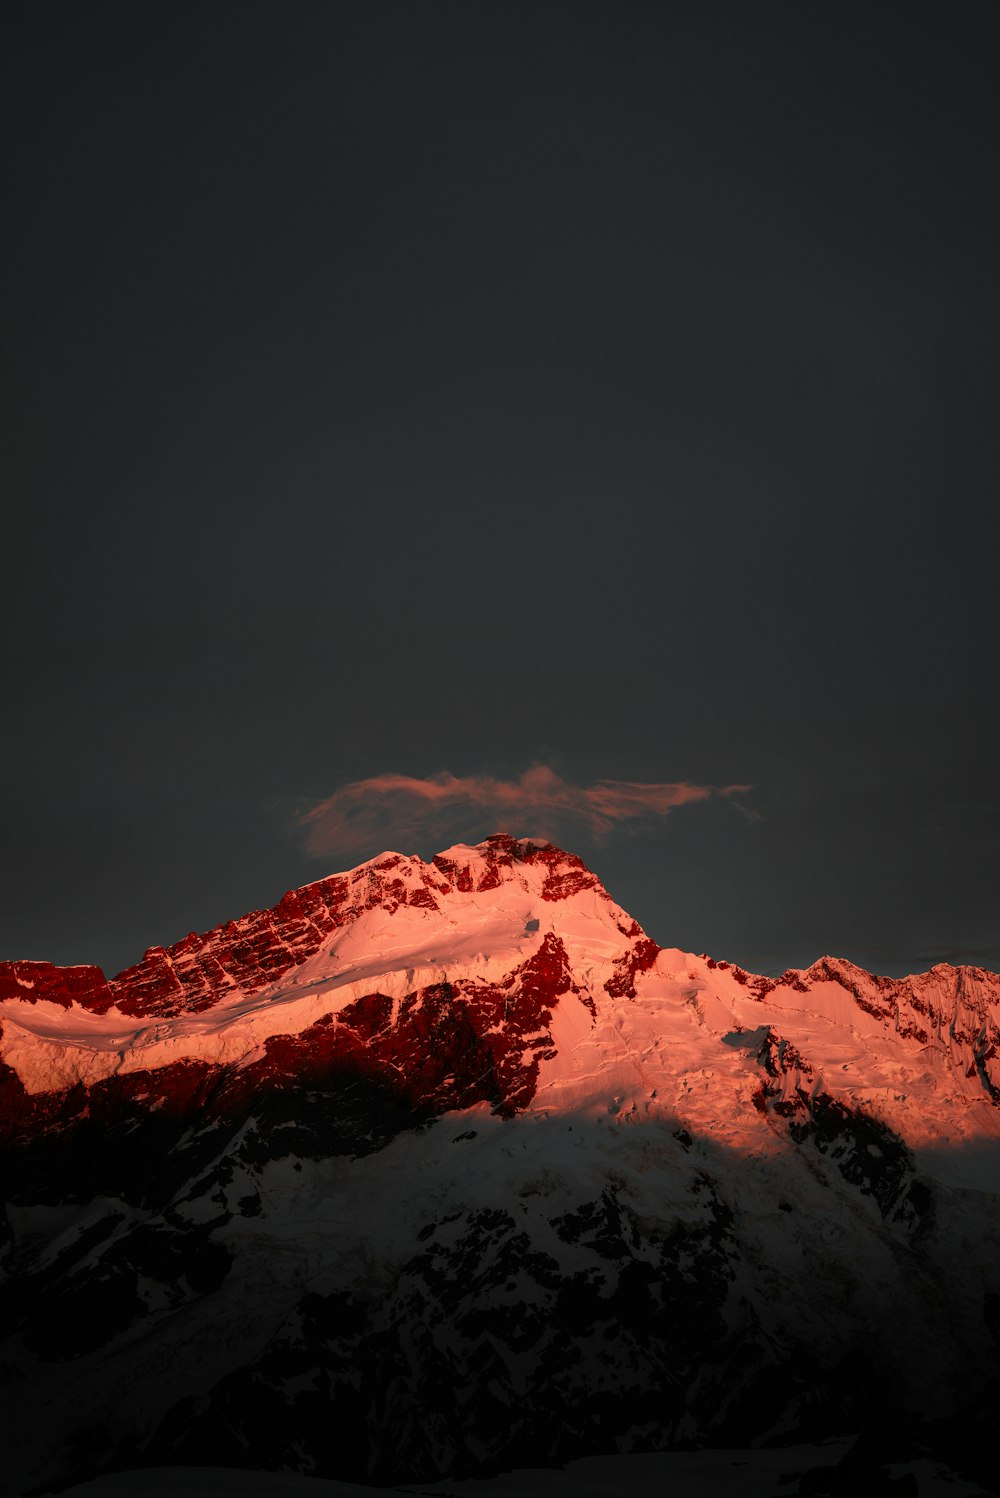 montagna coperta di neve sotto il cielo scuro